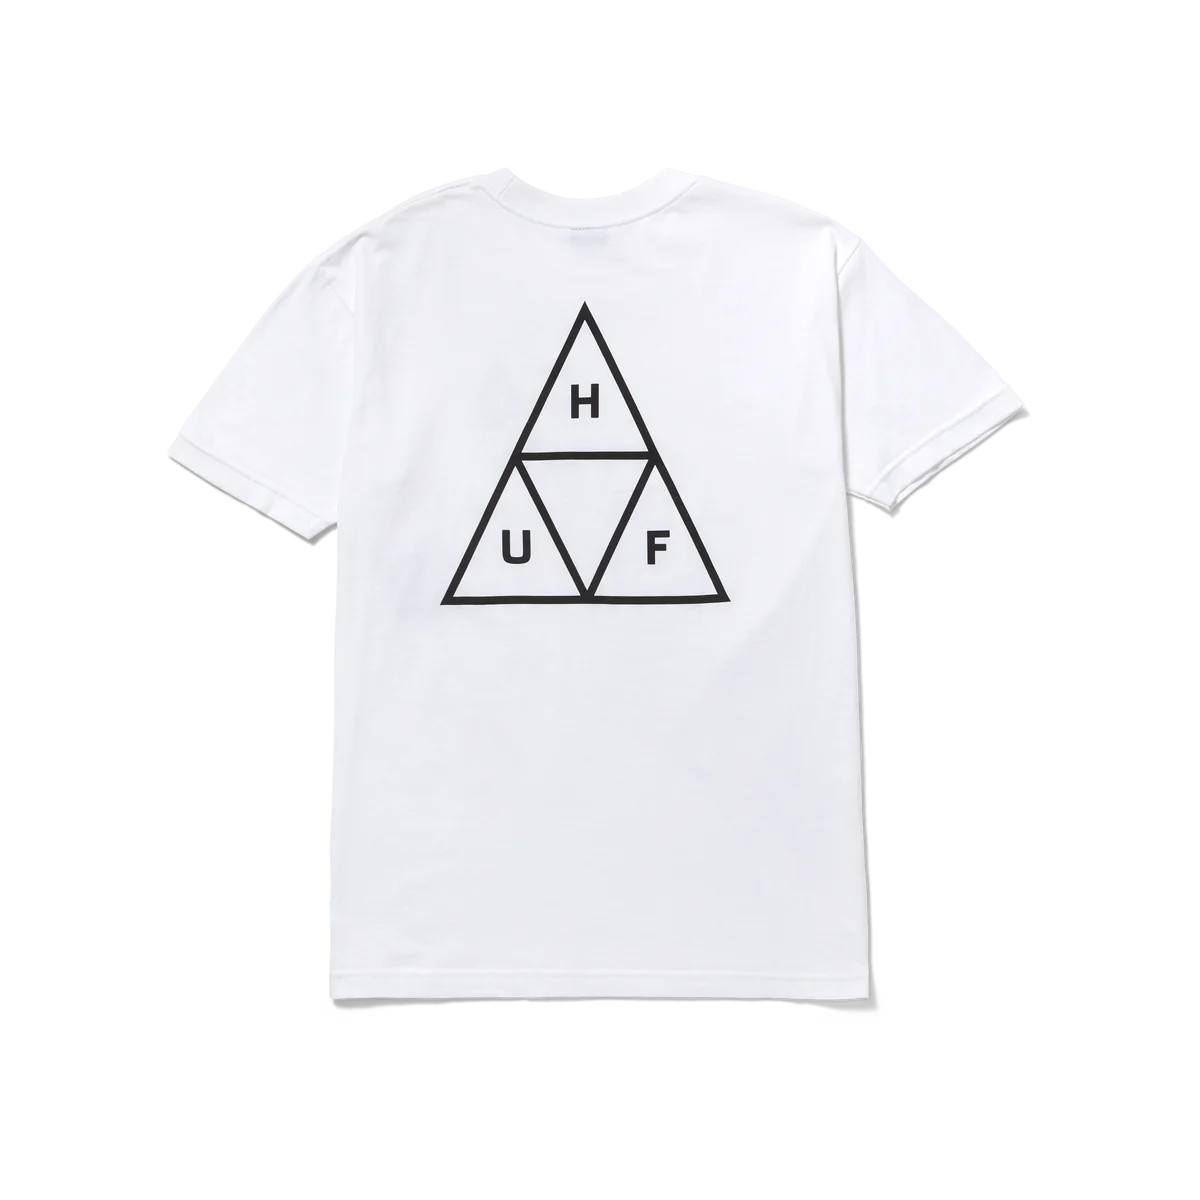 Huf Set Triple Triangle T-Shirt